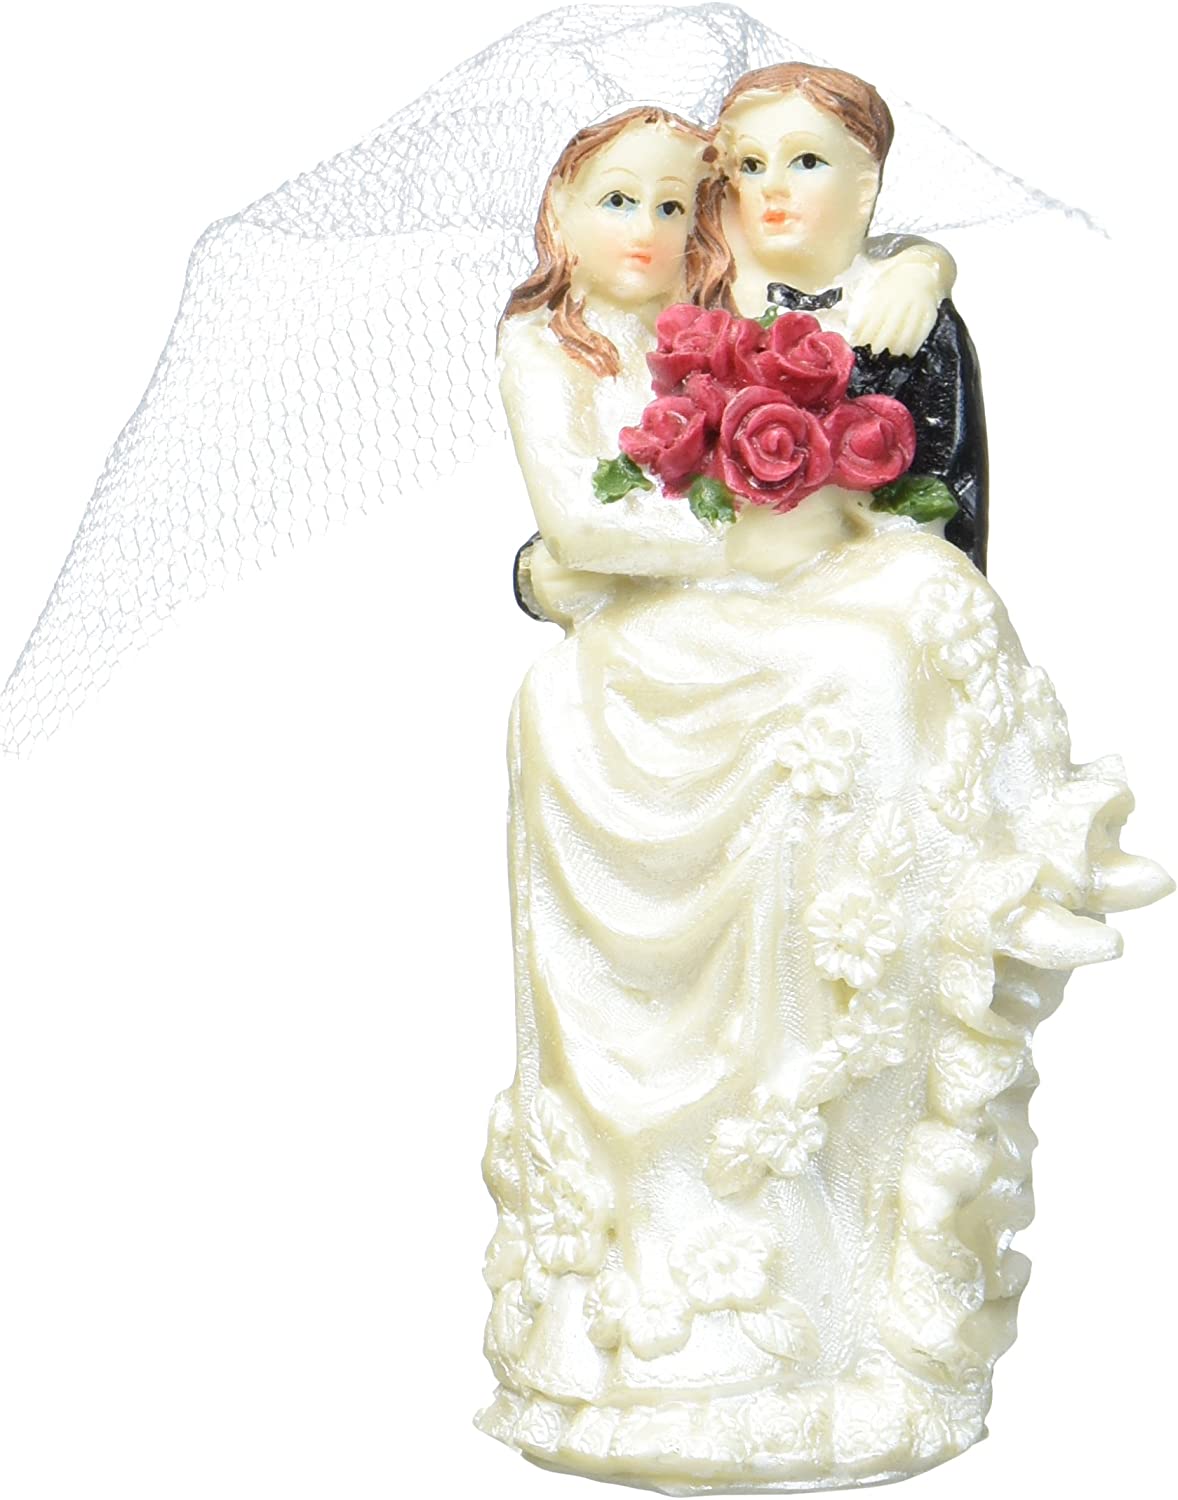 Städter 928152 Rose Bride and Groom Wedding Cake Topper – Porcelain/Resin, Black/Silver, 9.5 x 6 x 5 cm